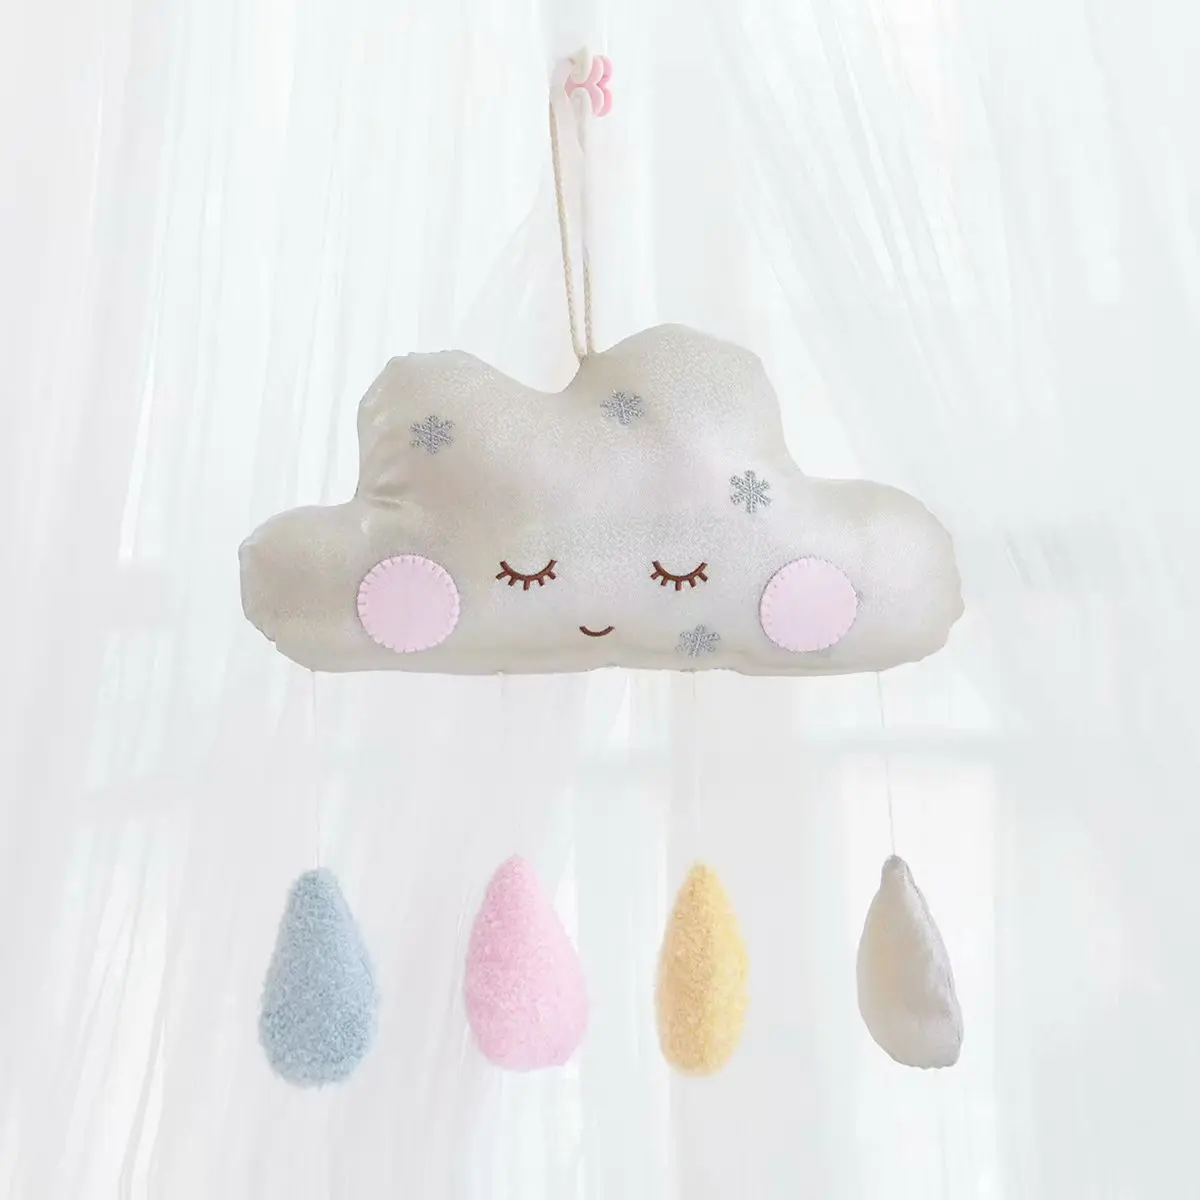 Лунная креативная Подушка, плюшевая игрушка, кукла для маленькой девочки, декор комнаты, плюшевое облако, на стену, для девочки, подарок на день рождения, 35*20 см - Цвет: Cloud Sliver